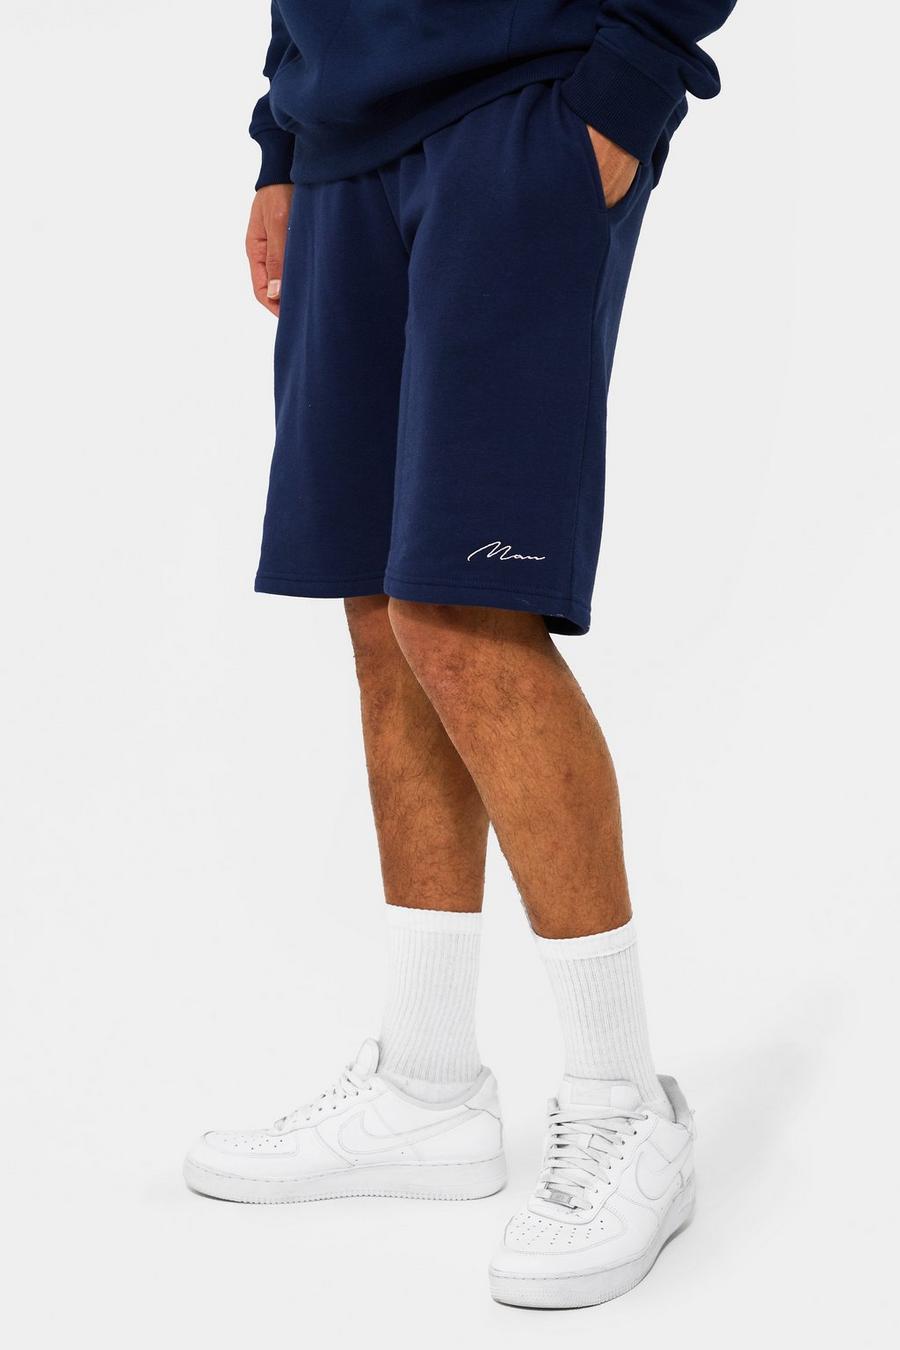 Navy azul marino Tall Man Mid Jersey Shorts